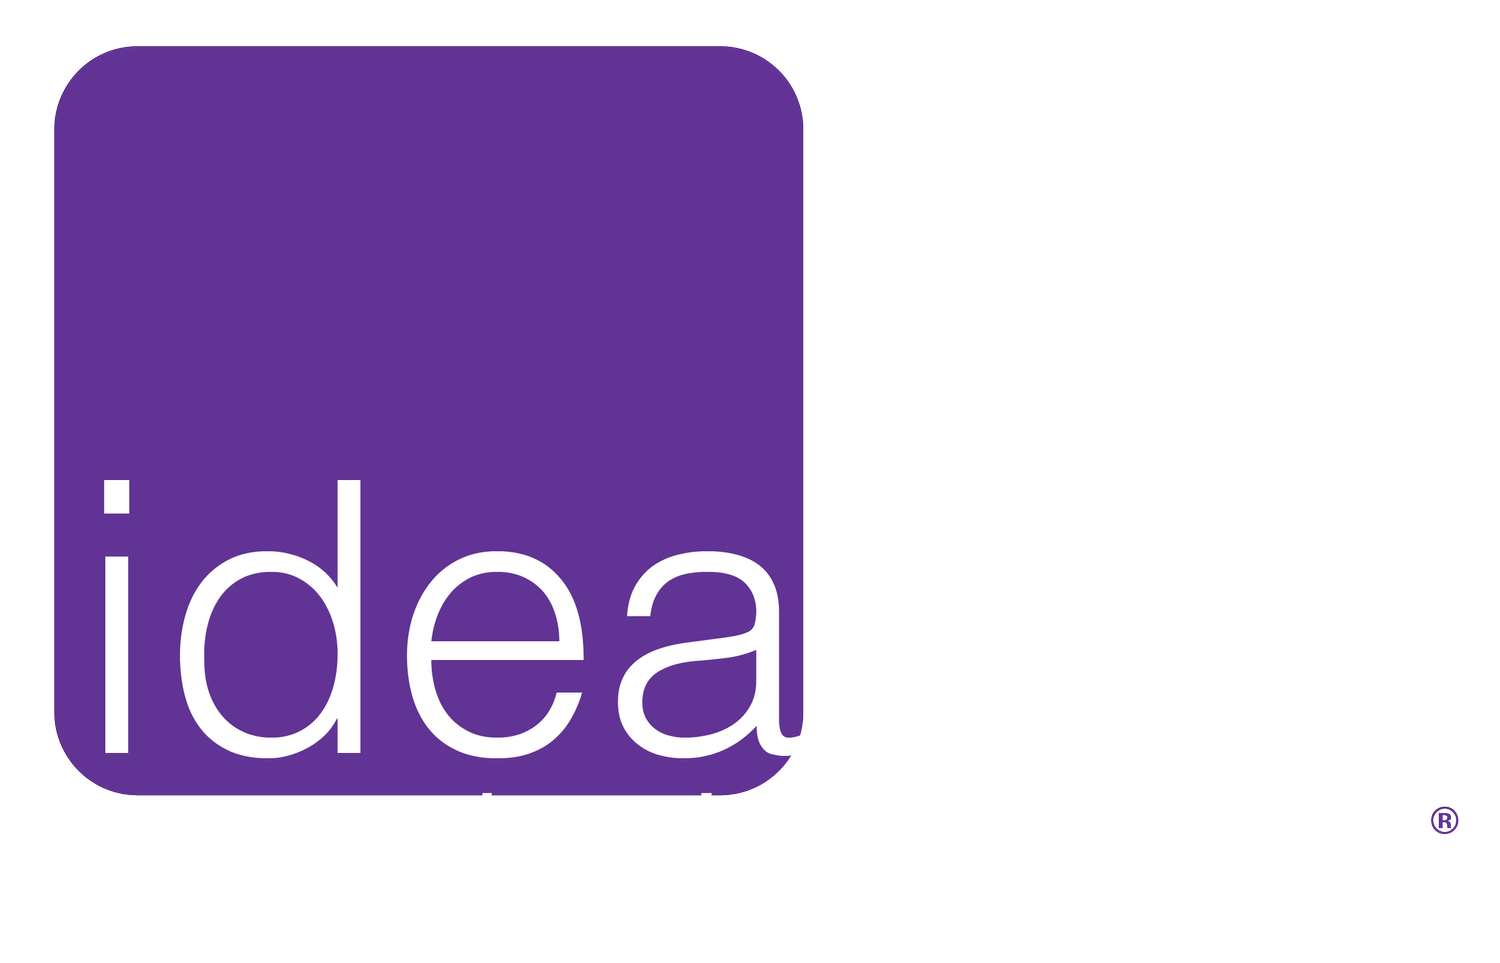 Ideabox Design Studio